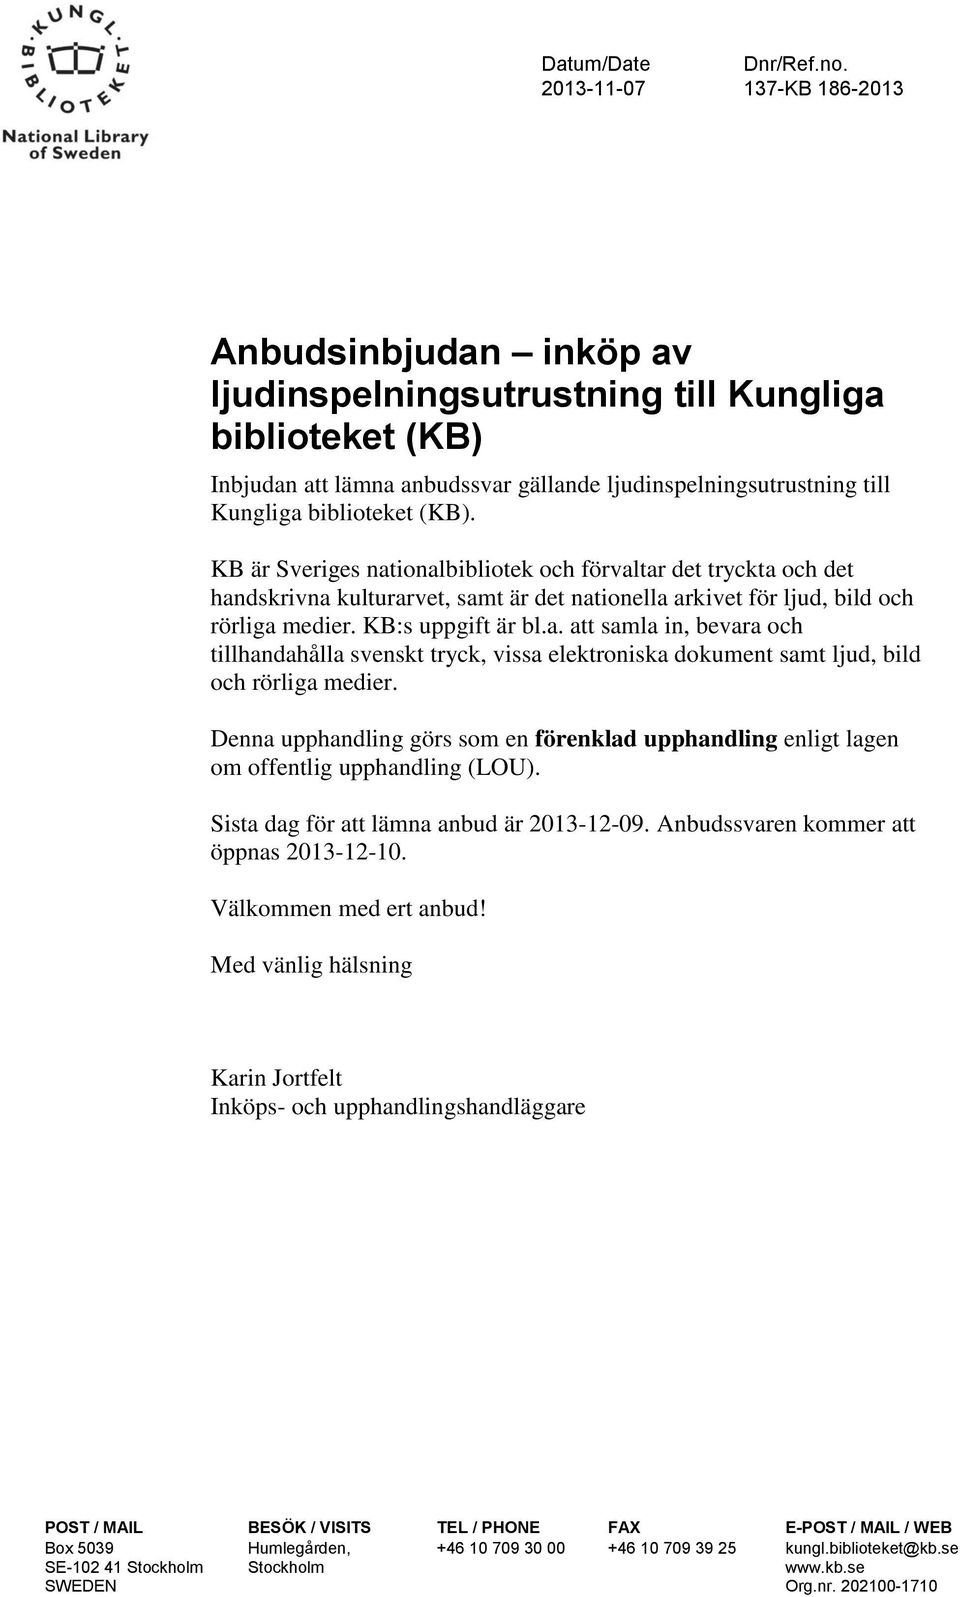 (KB). KB är Sveriges nationalbibliotek och förvaltar det tryckta och det handskrivna kulturarvet, samt är det nationella arkivet för ljud, bild och rörliga medier. KB:s uppgift är bl.a. att samla in, bevara och tillhandahålla svenskt tryck, vissa elektroniska dokument samt ljud, bild och rörliga medier.